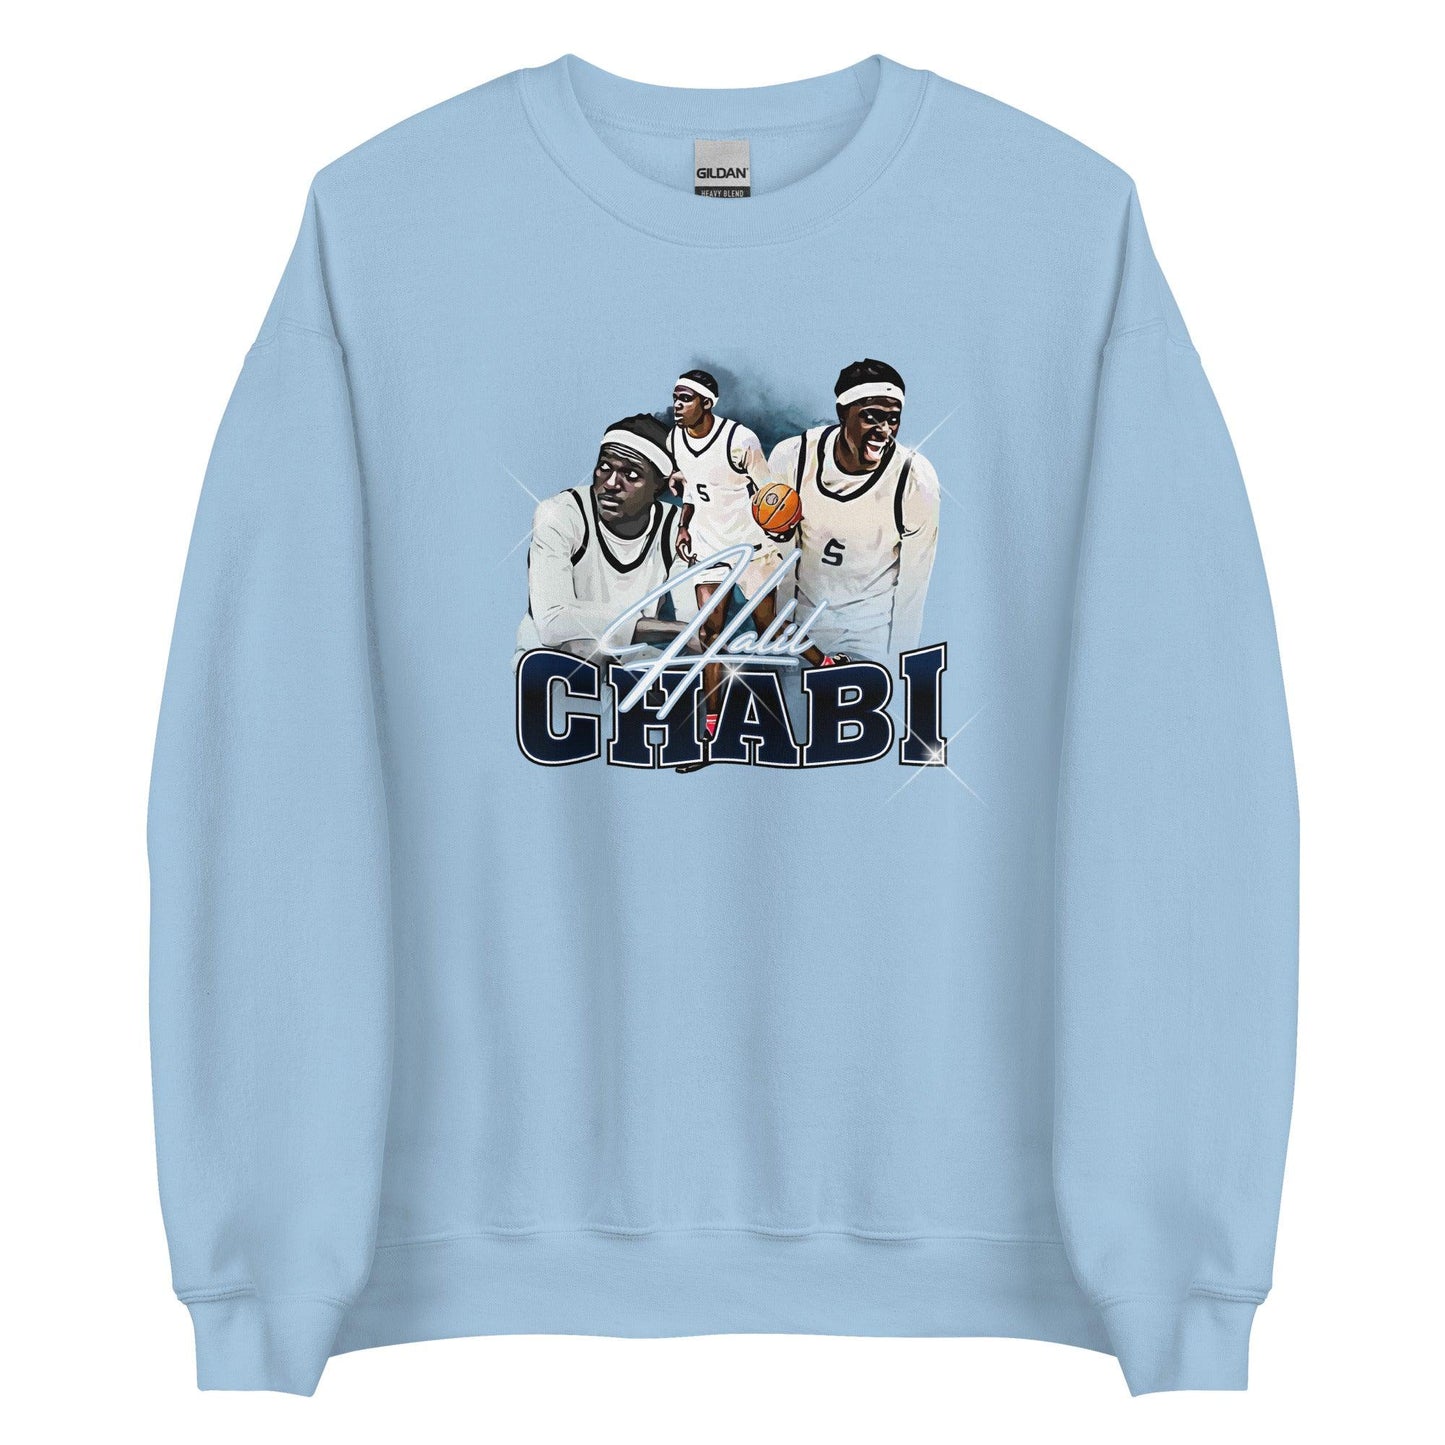 Halil Chabi “Essential” Sweatshirt - Fan Arch